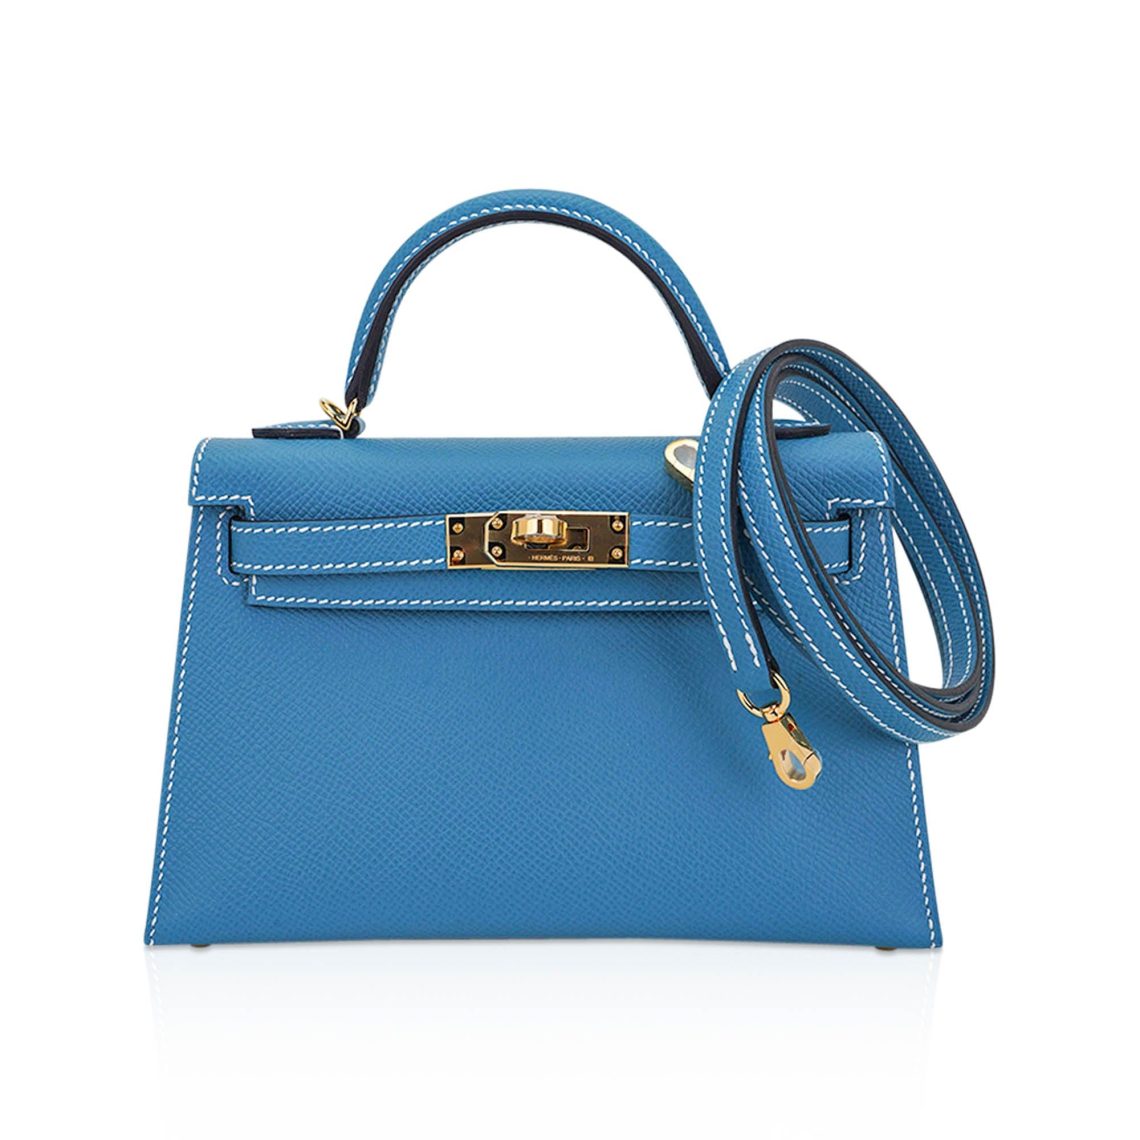 Mightychic | Exclusive Hermes Luxury Handbags | Global Leader in Rare ...